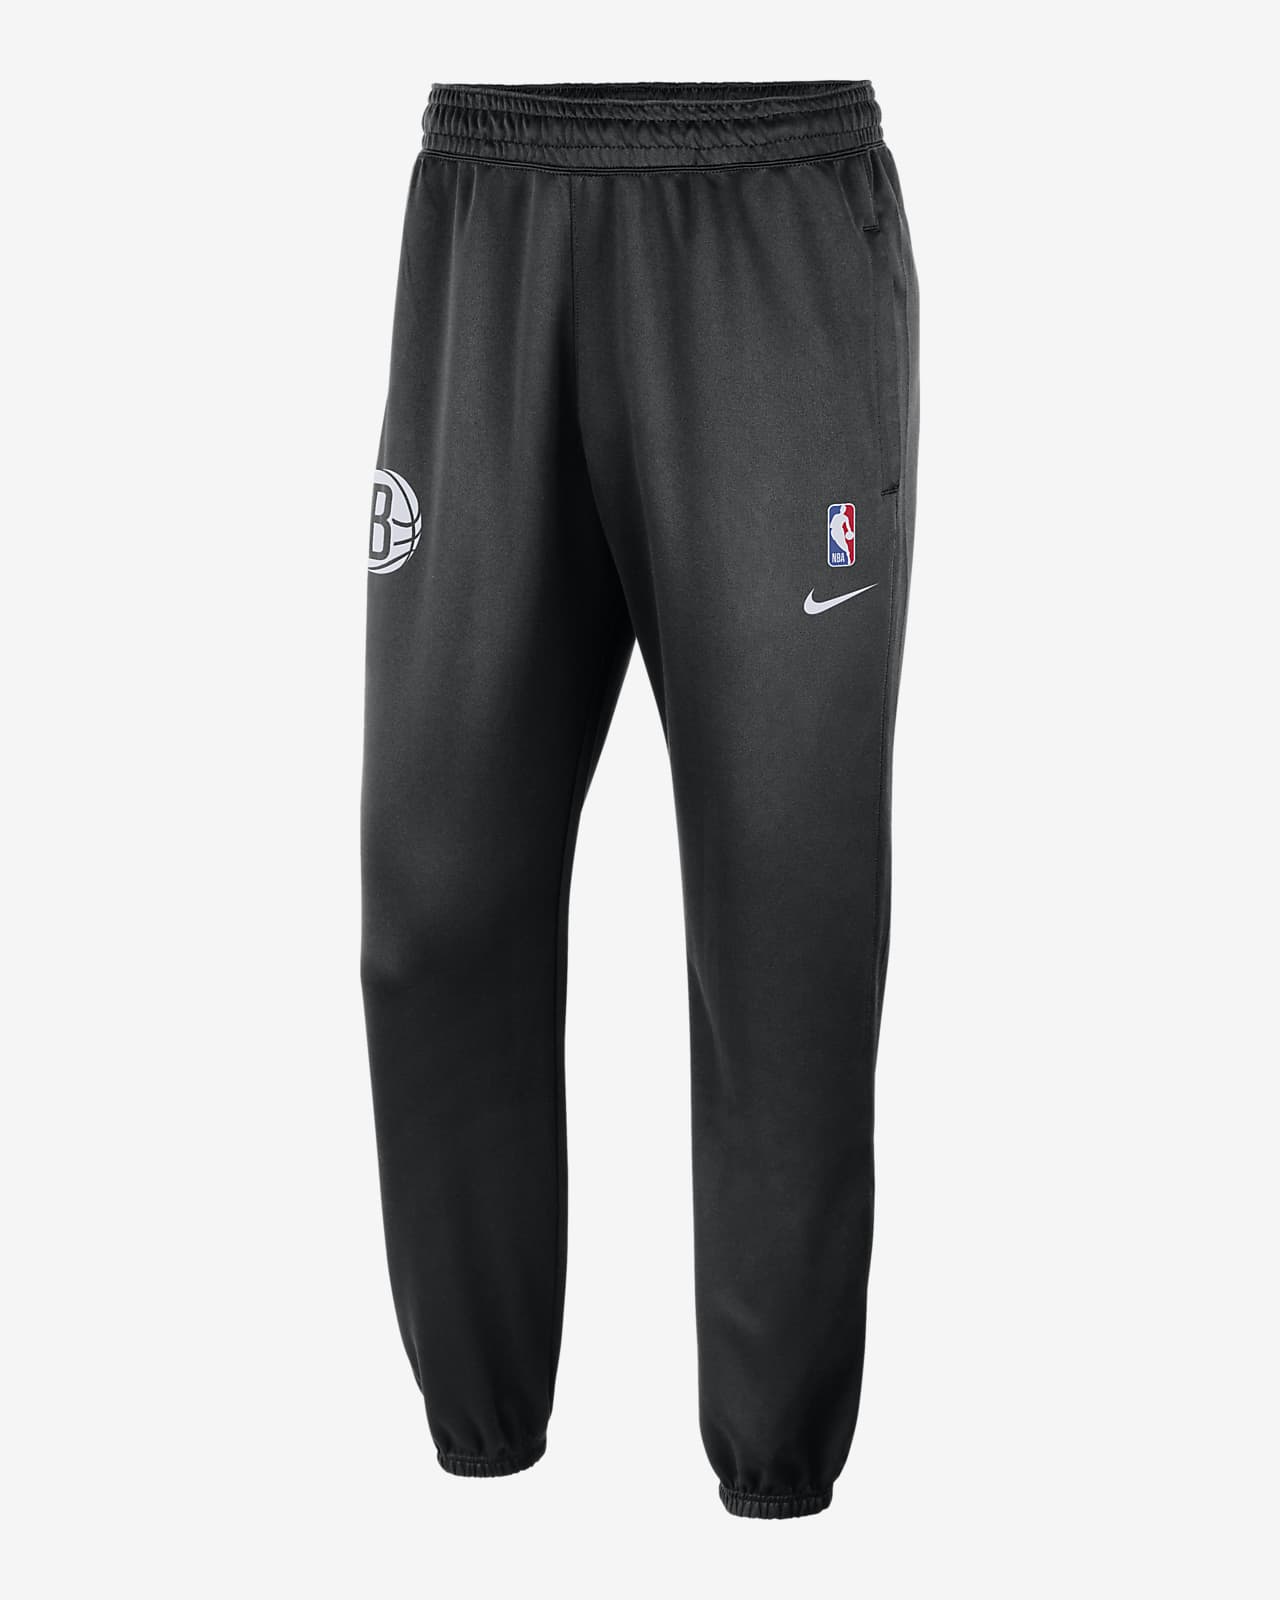 Ανδρικό παντελόνι Nike Dri-FIT NBA Μπρούκλιν Νετς Spotlight